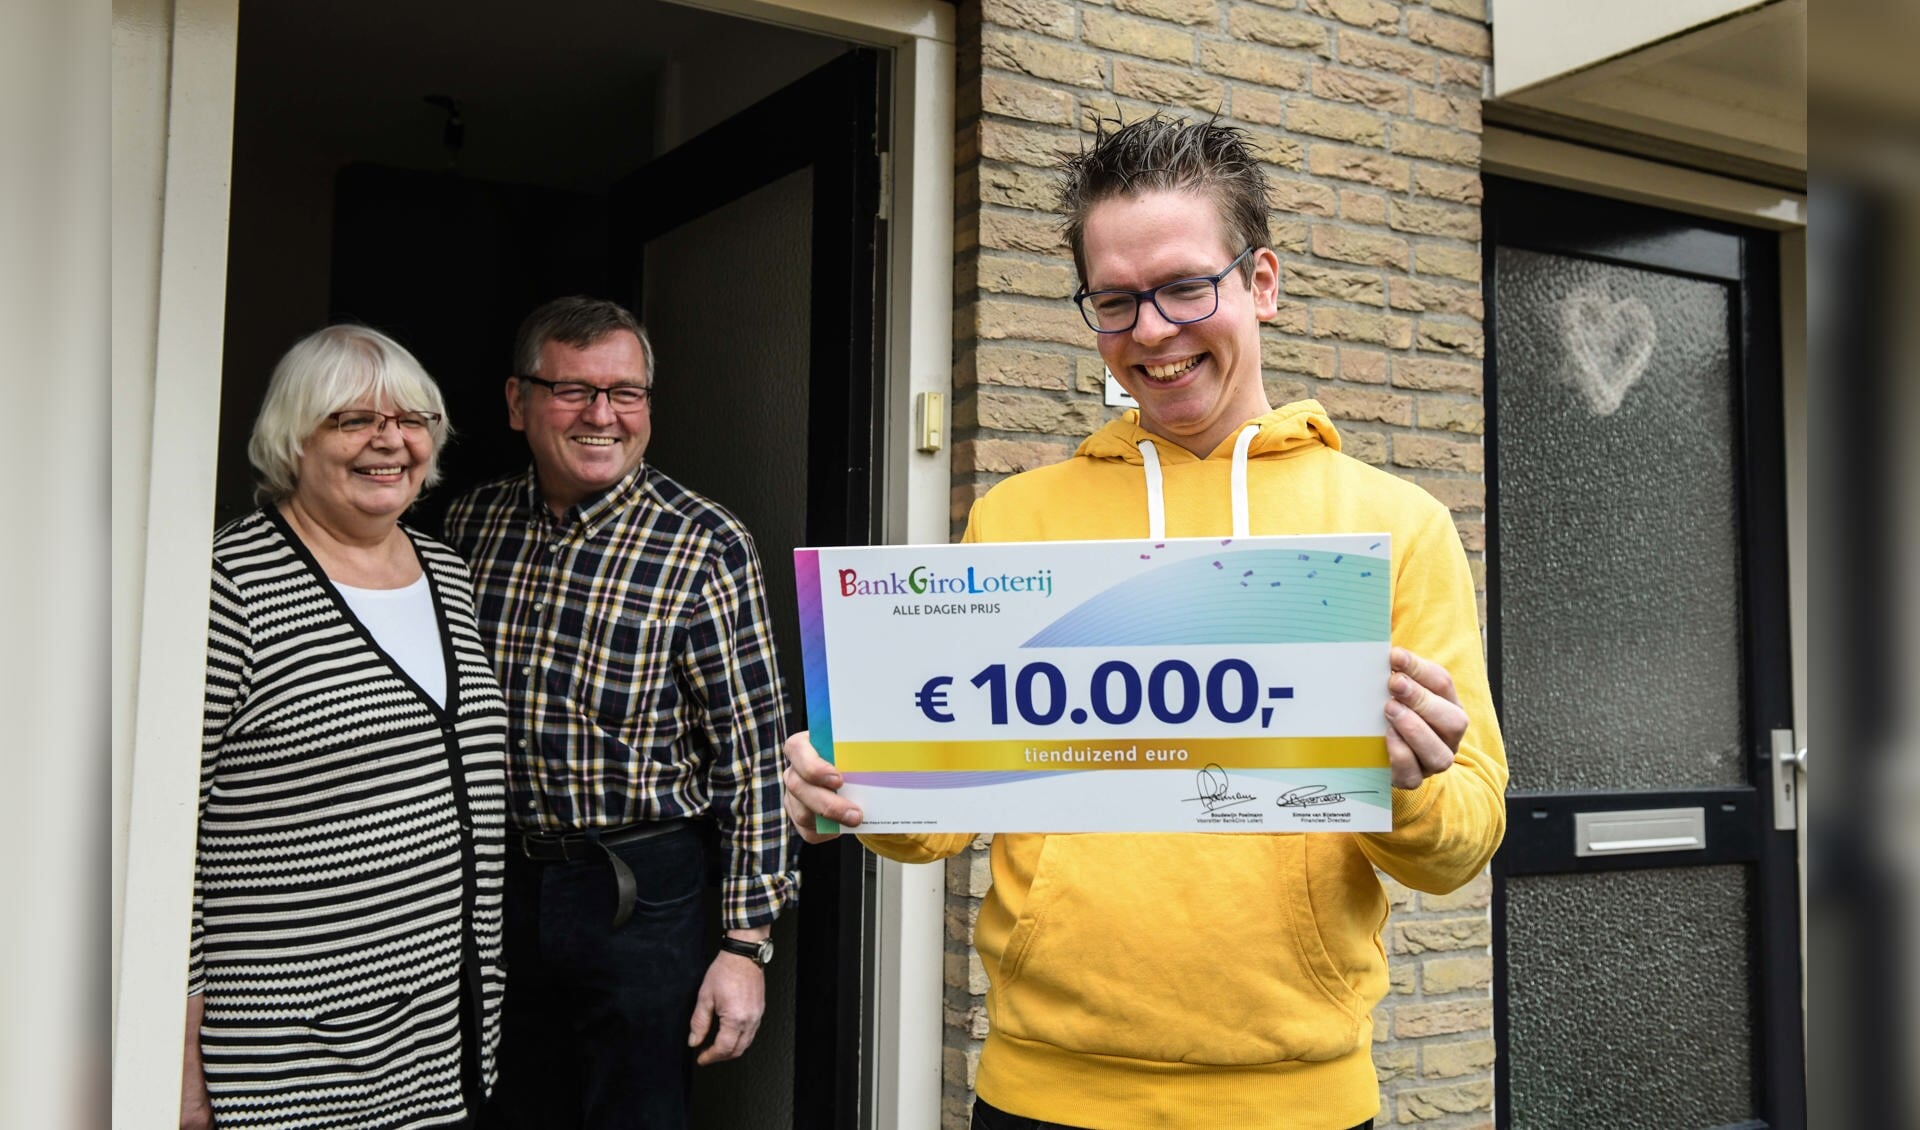 Gert Jan uit Geffen ontvangt, in het bijzijn van zijn ouders, een cheque van 10.000 euro van de BankGiro Loterij.